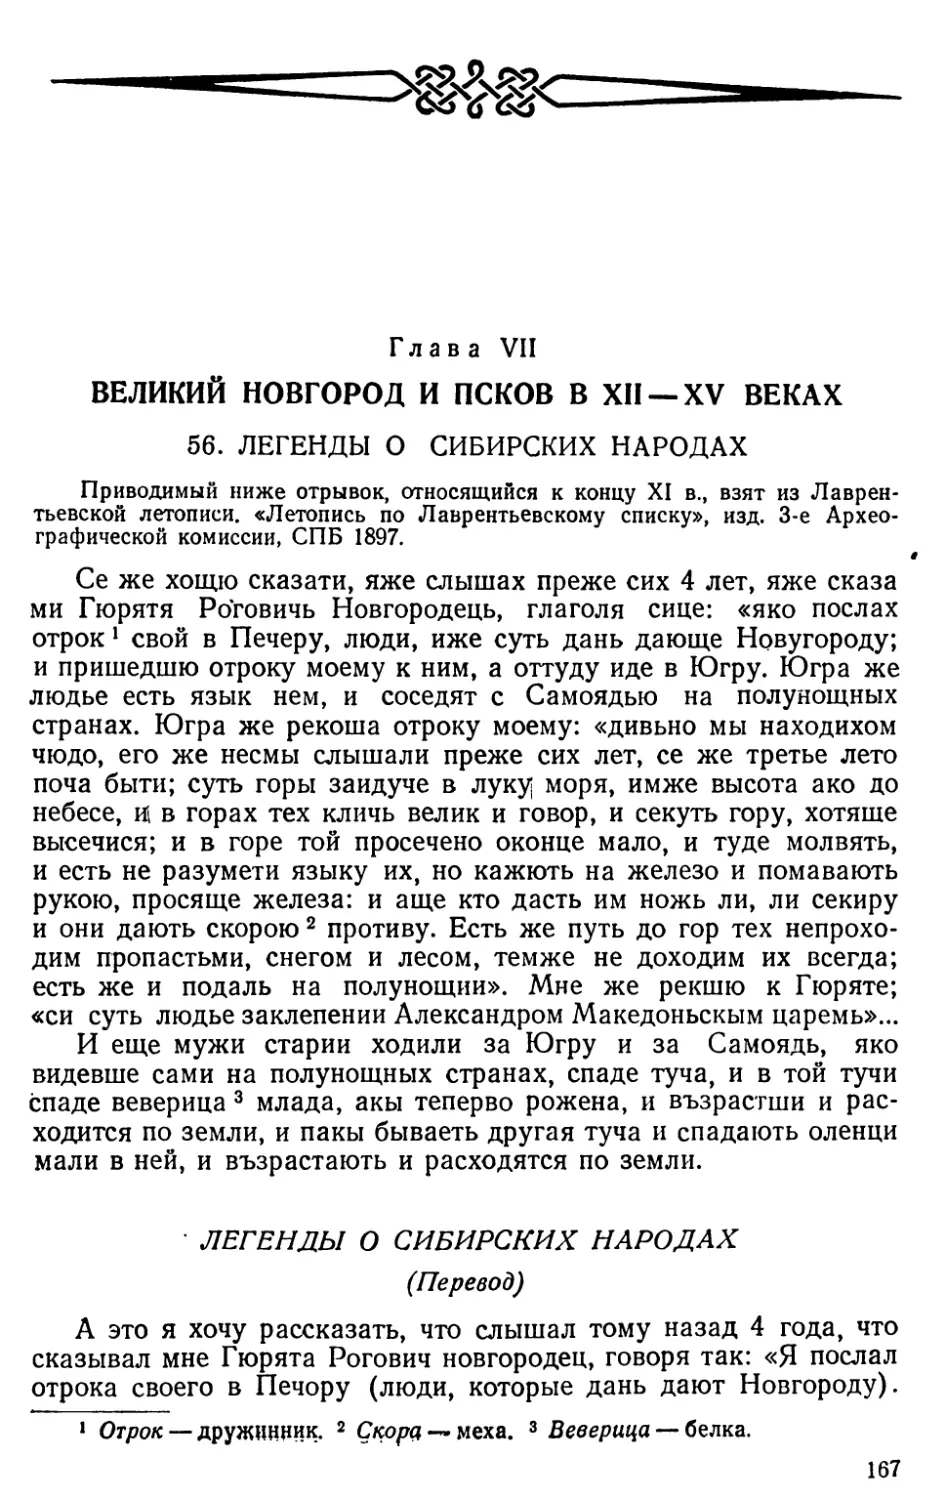 Глава VII. Великий Новгород и Псков в XII—XV веках